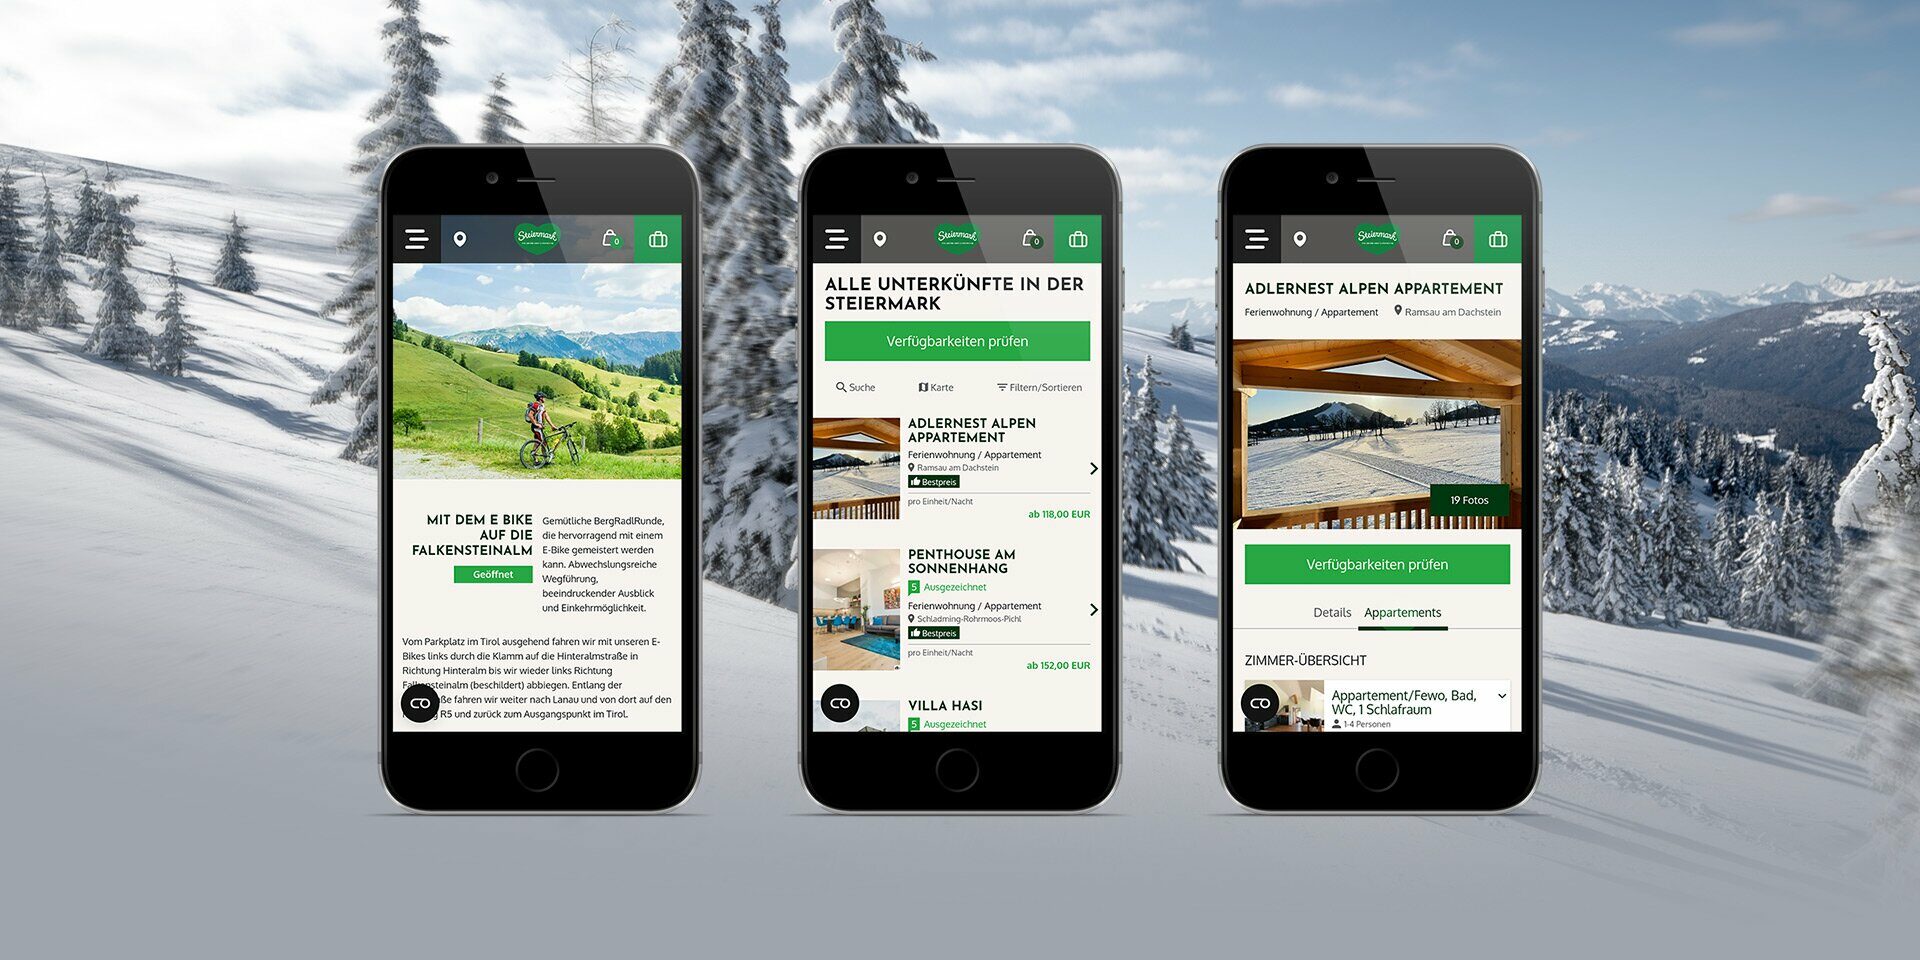 Screenshots der neuen Steiermark-Website auf drei Smartphone-Bildschirmen